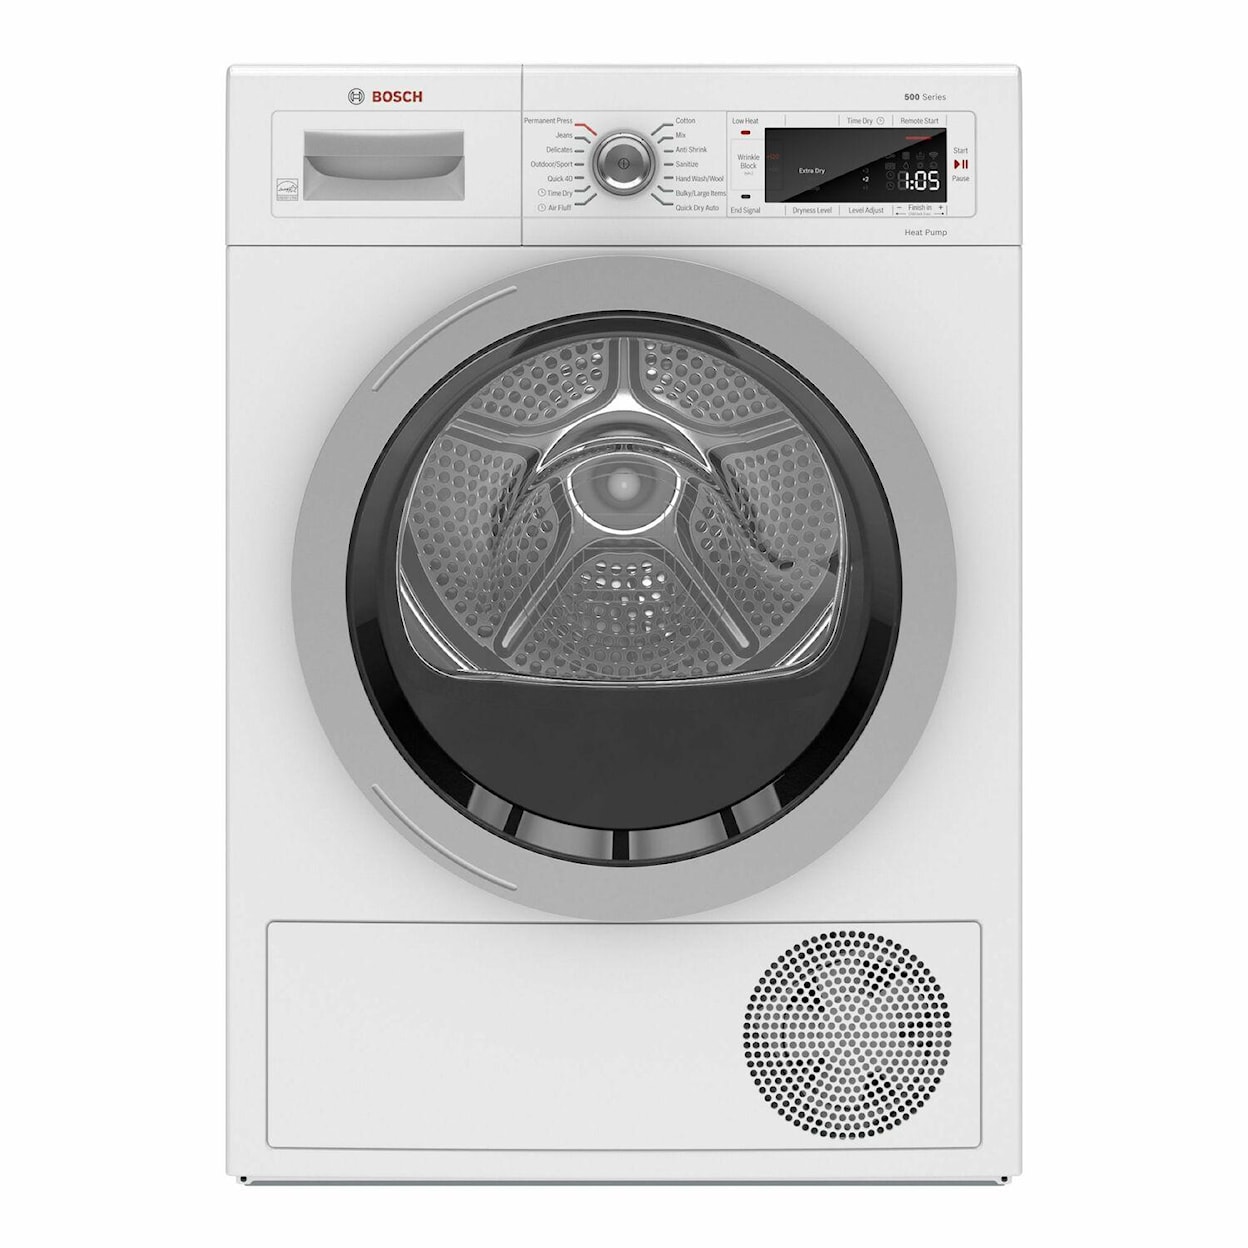 Bosch Laundry Dryer